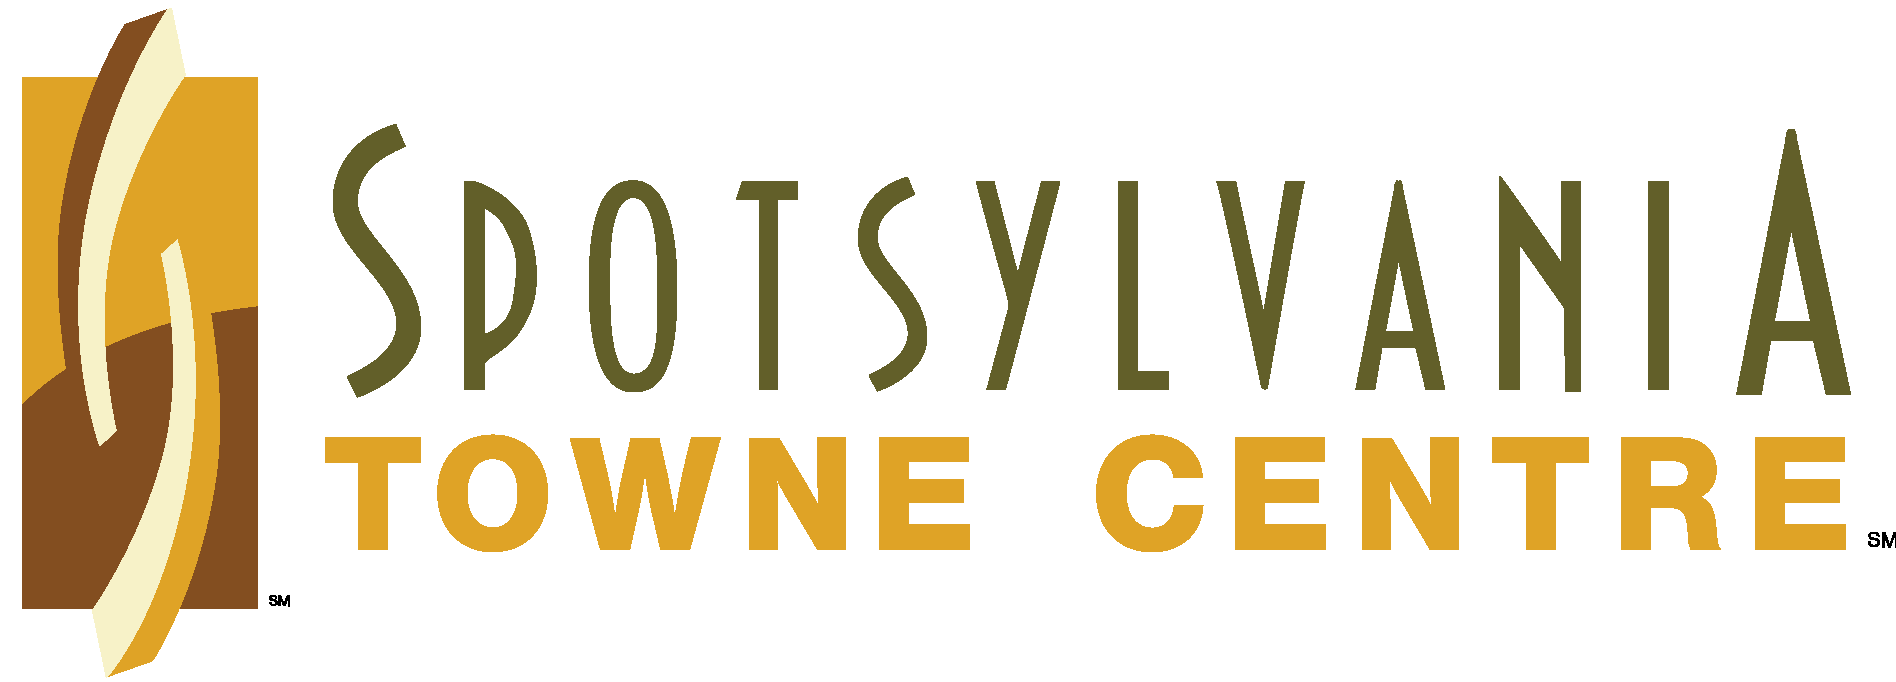 Spotsylvania Towne Centre New Logo Vector